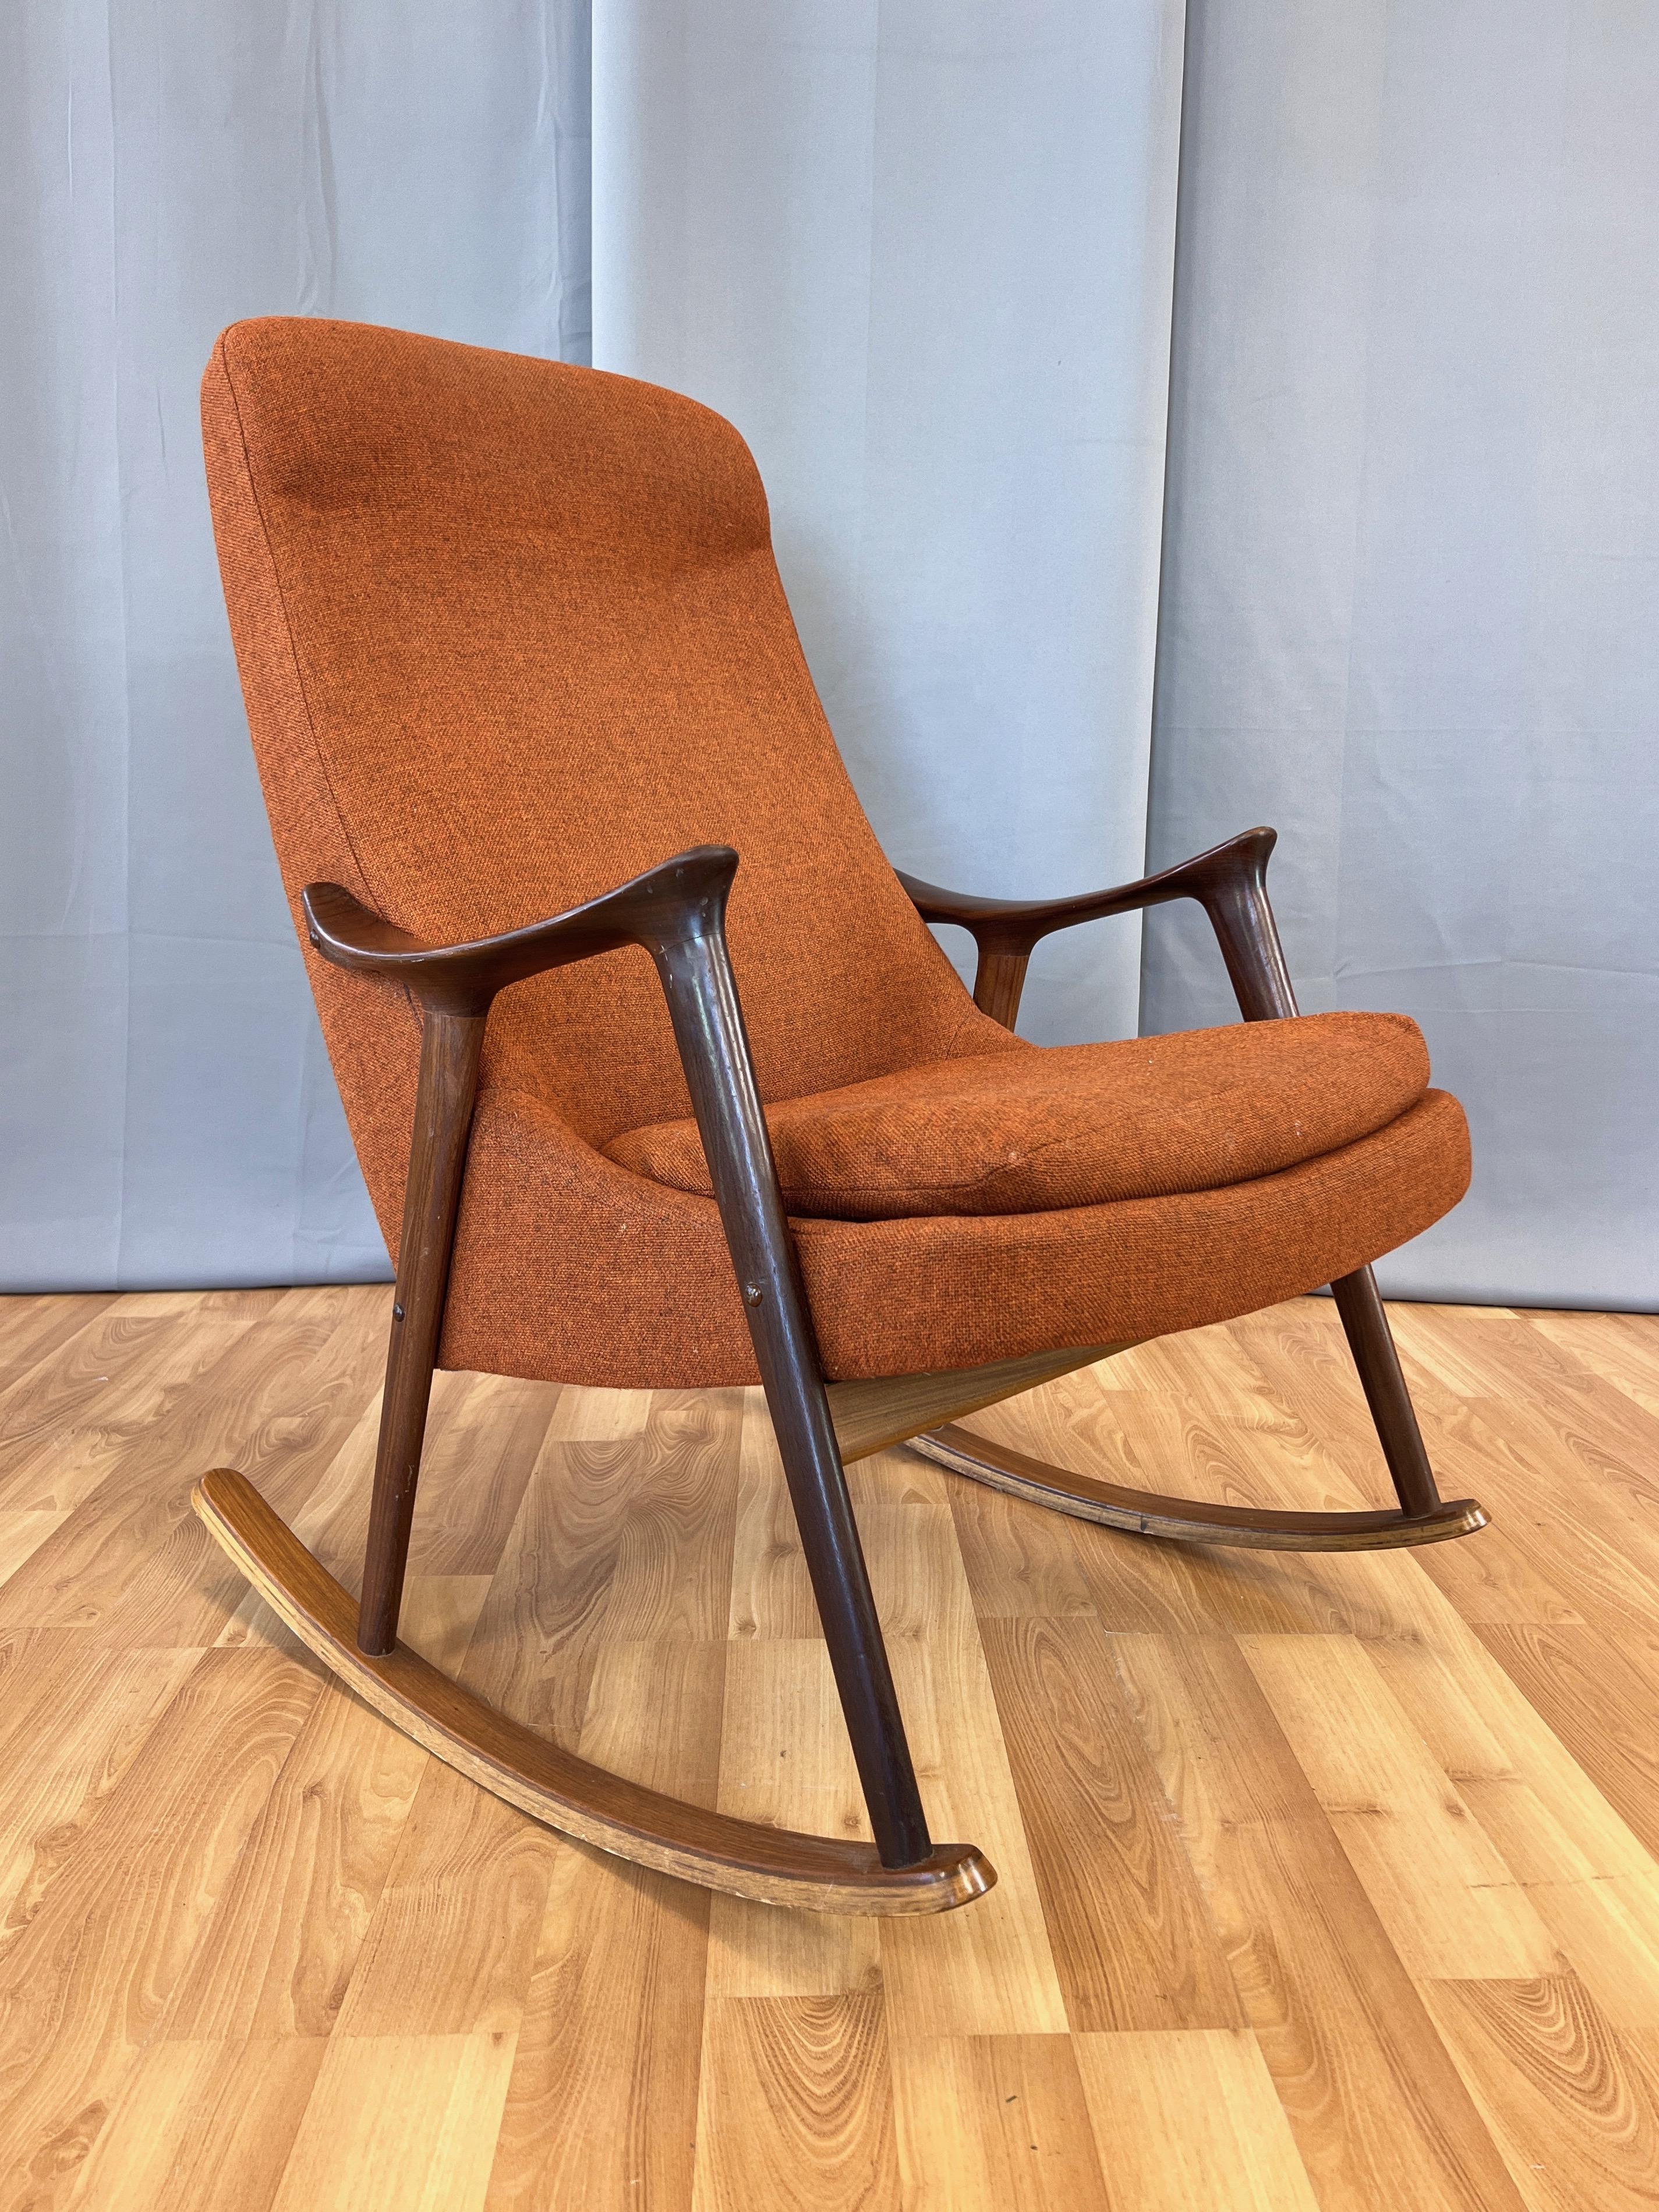 Hand-Carved Ingmar Relling for Westnofa High-Back Sculptural Teak Rocking Chair, 1960s For Sale